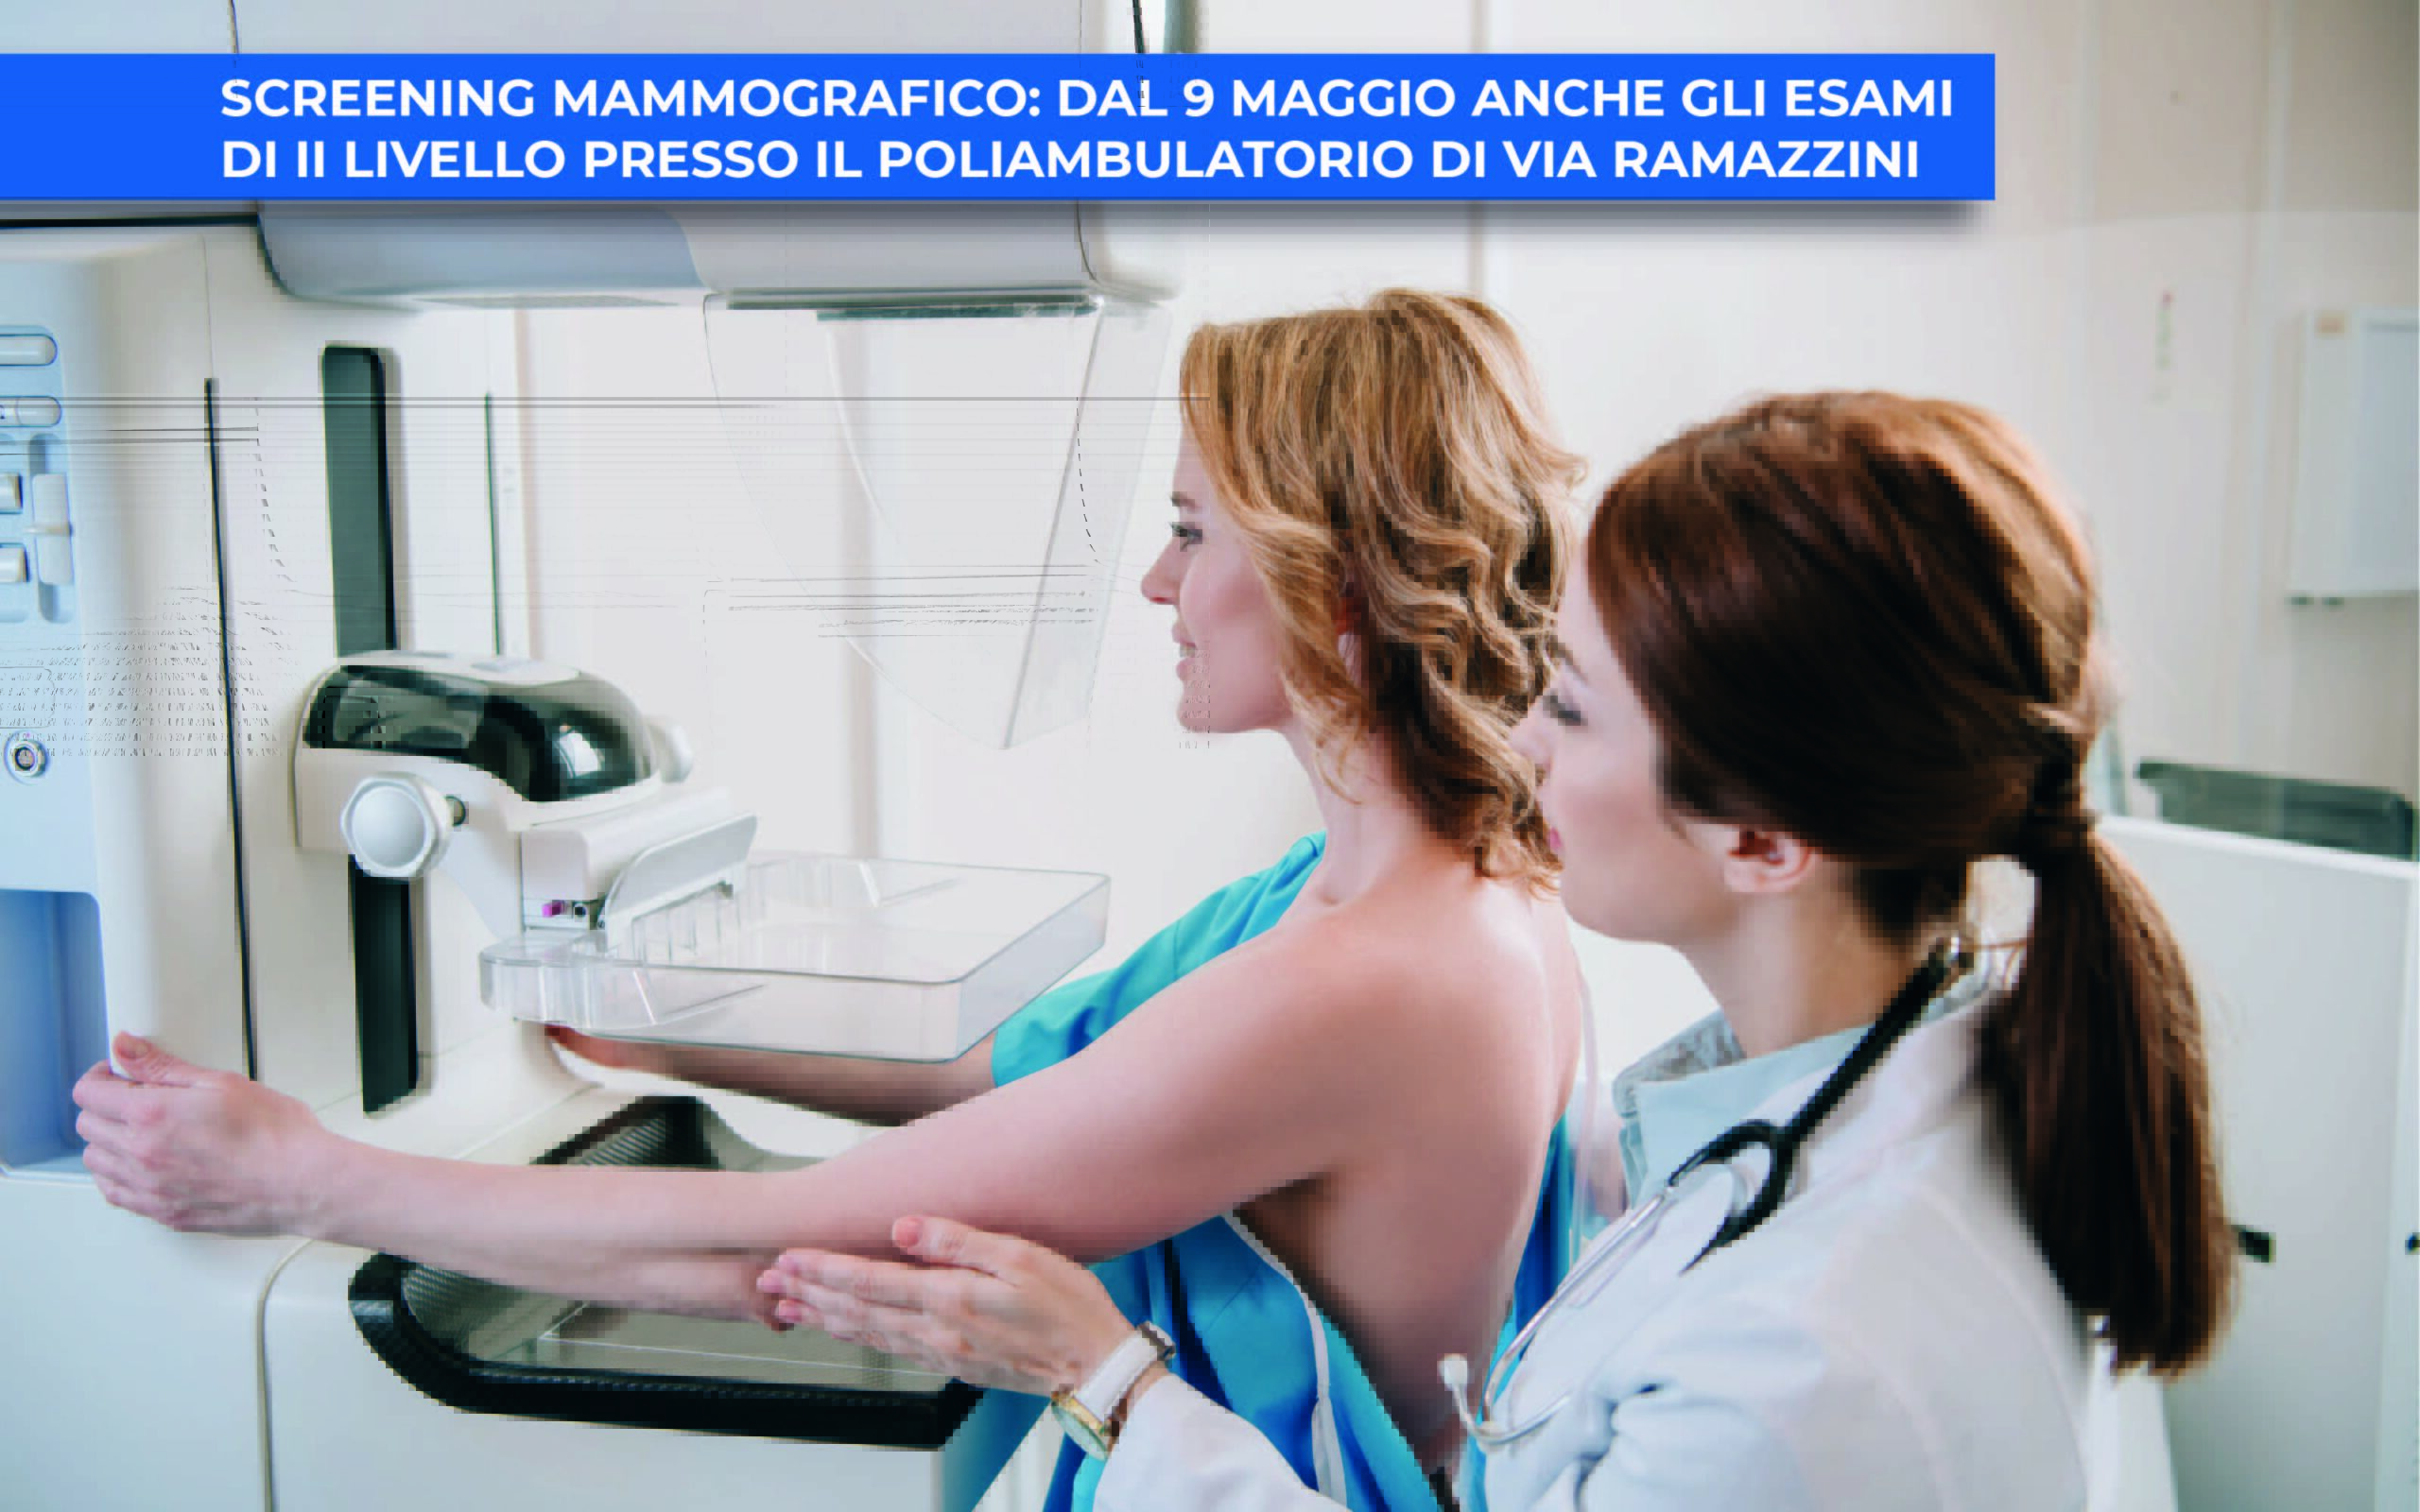 Screening mammografico: dal 9 maggio anche gli esami di II livello presso il poliambulatorio di via ramazzini